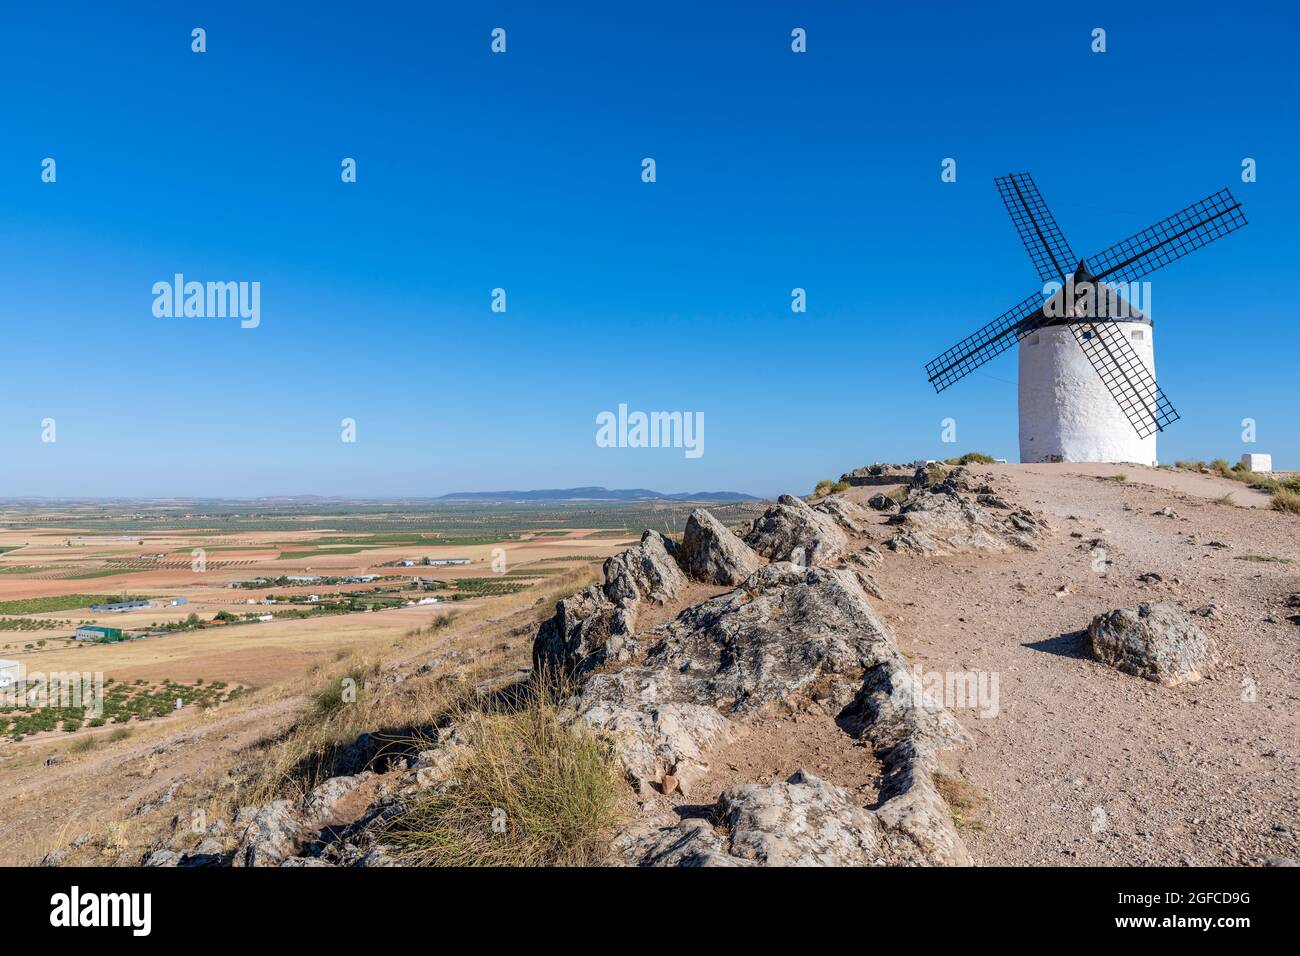 Ancien moulin à vent espagnol, Consuegra, Castilla-la Mancha, Espagne Banque D'Images